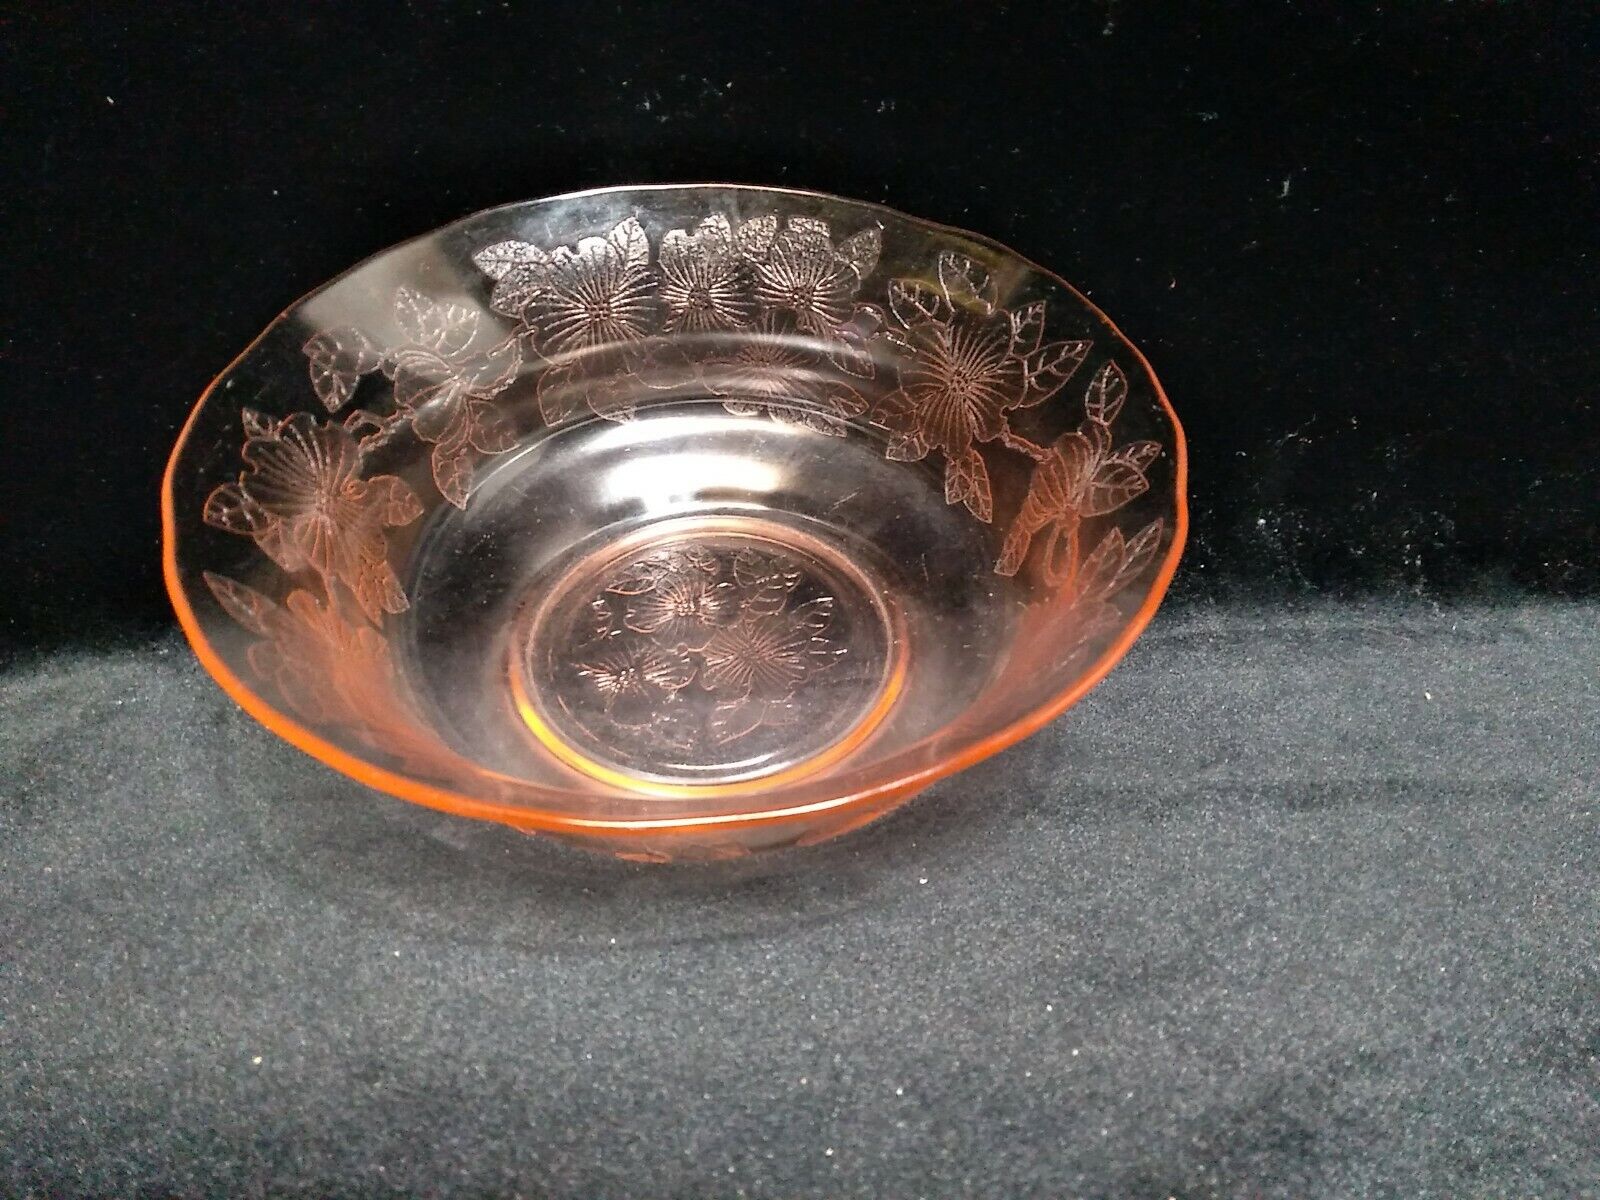 Vntg Pink Depression Glass Serving Bowl Floral Pattern 8.5”D